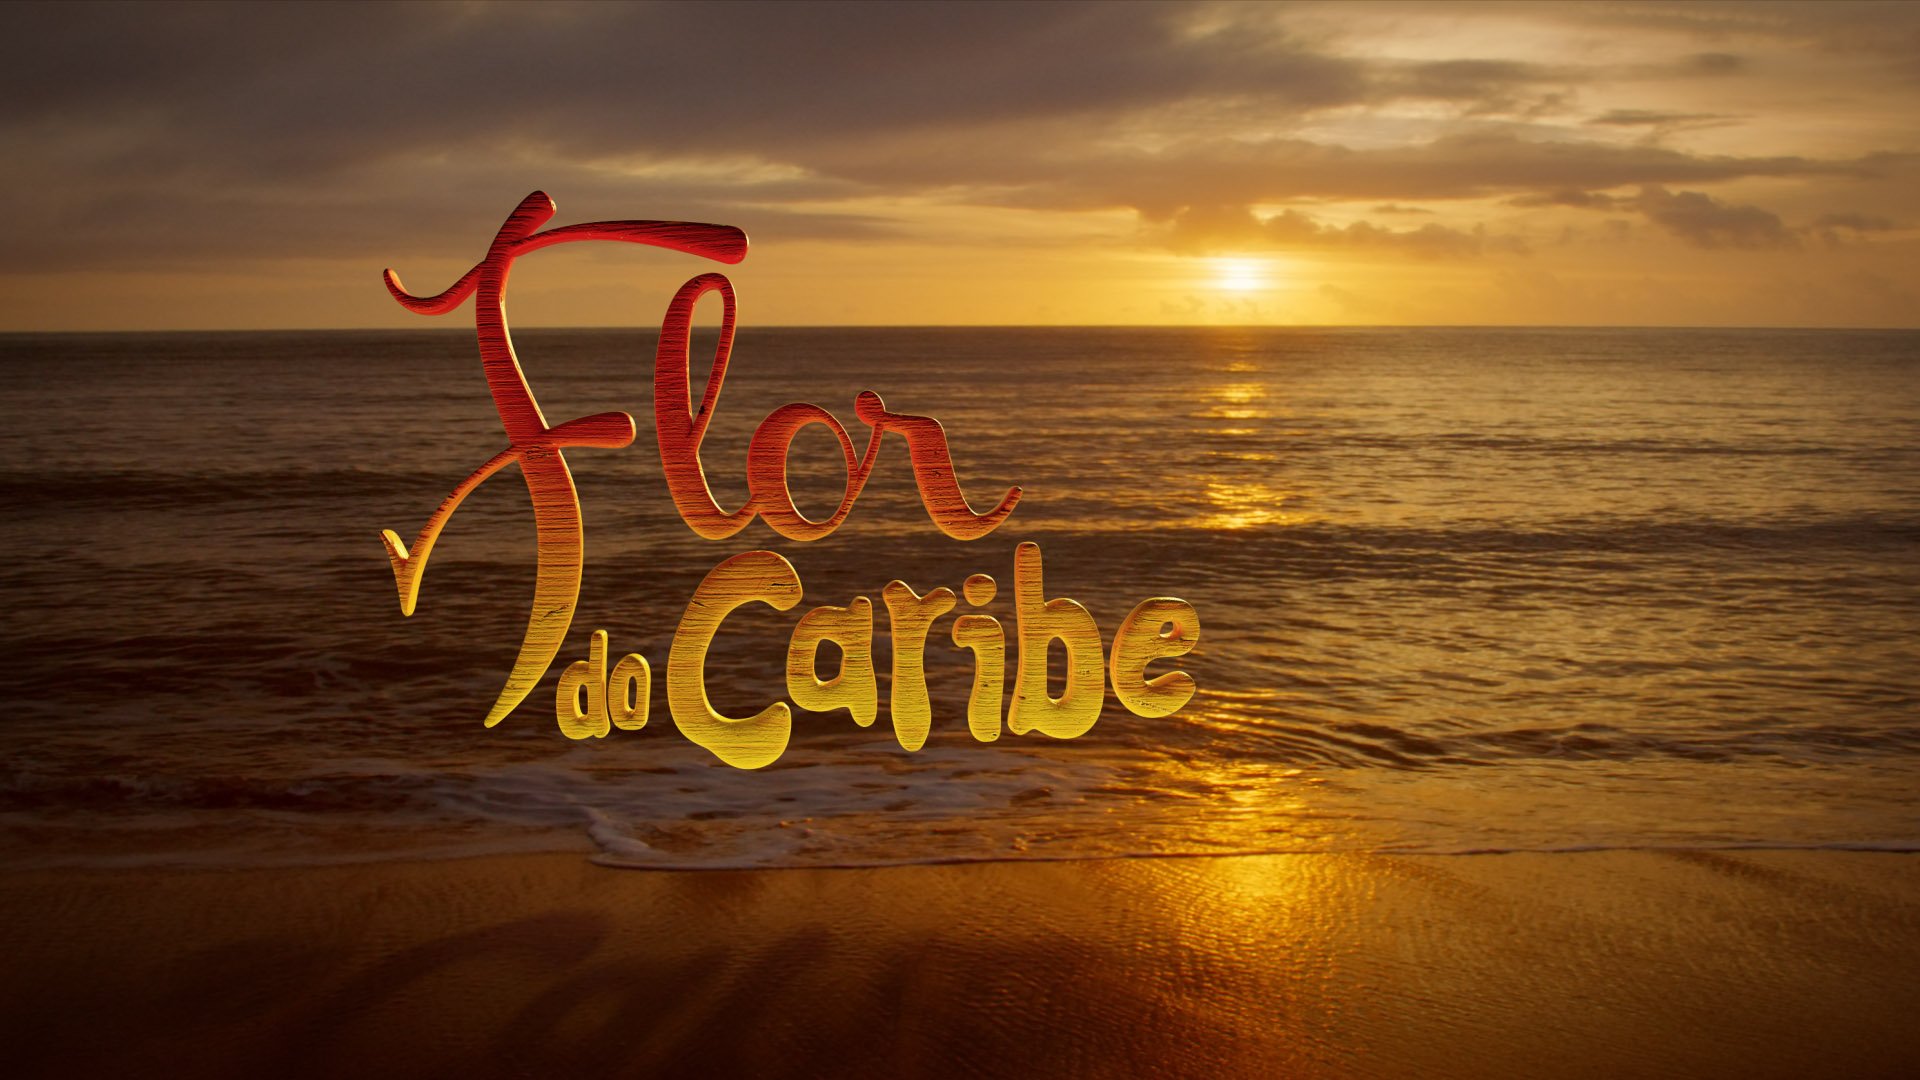 A reprise da novela Flor do Caribe (Foto: Reprodução / TV Globo)